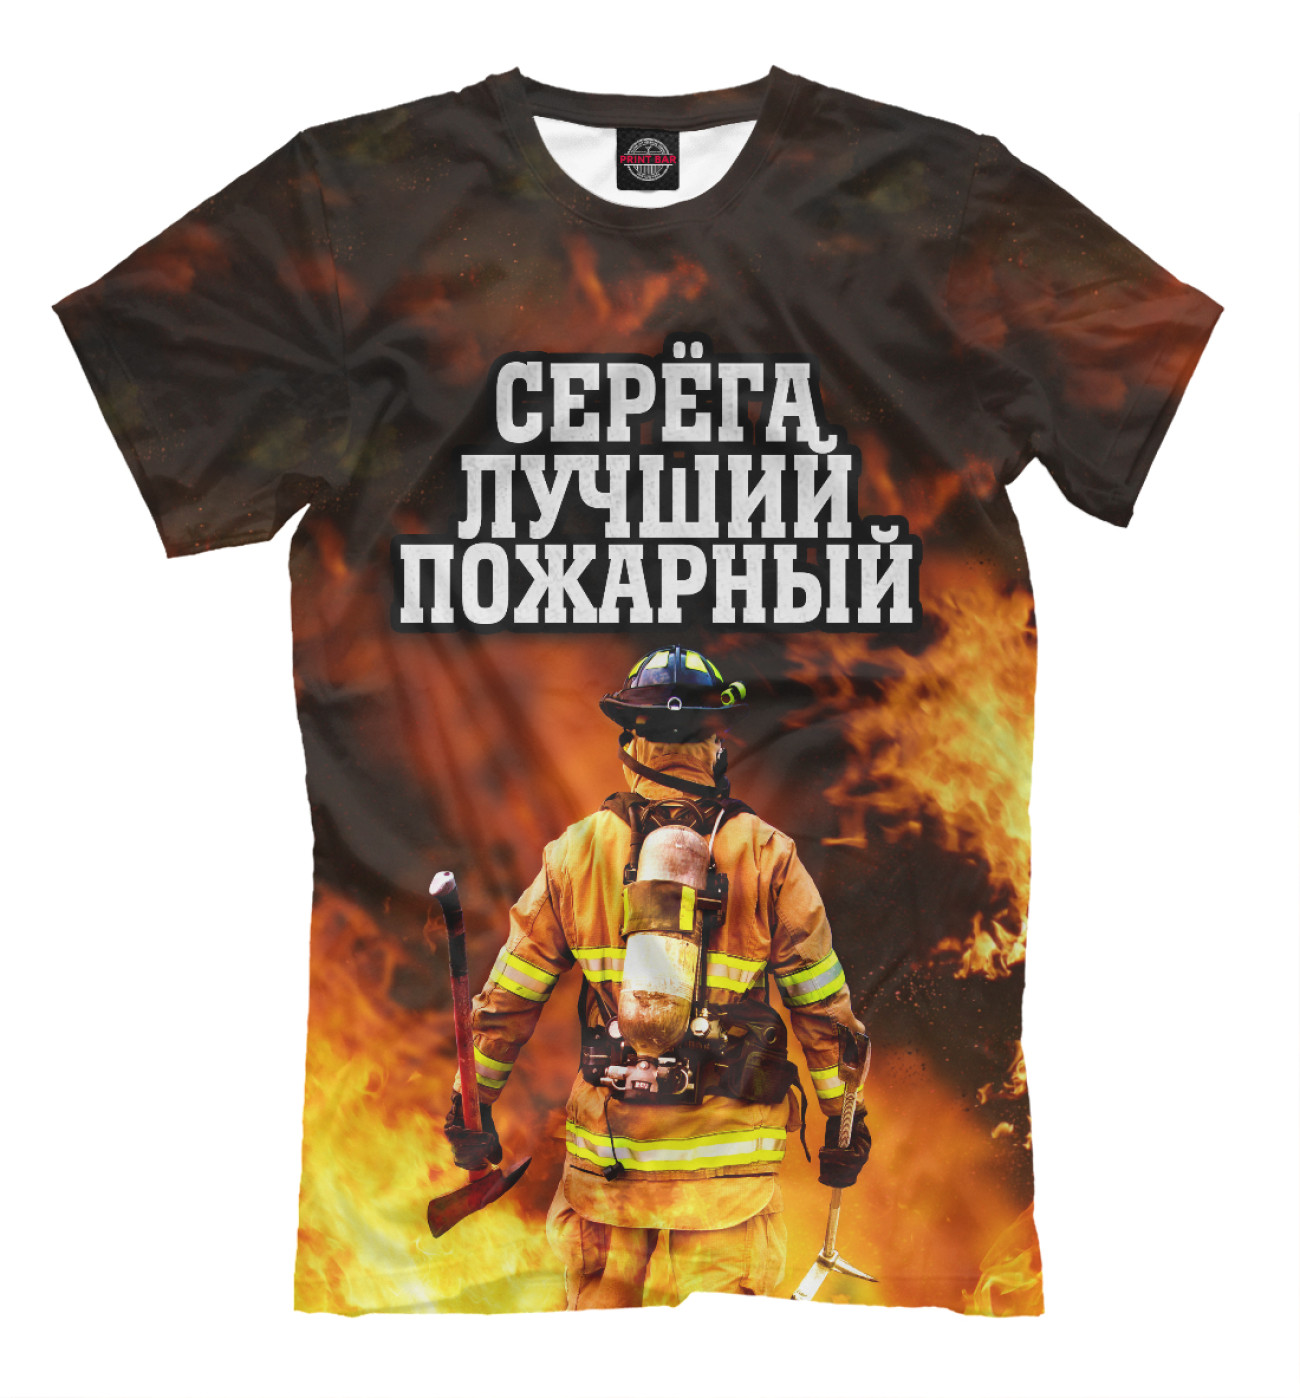 Мужская Футболка Серега лучший пожарный, артикул: IMR-996232-fut-2